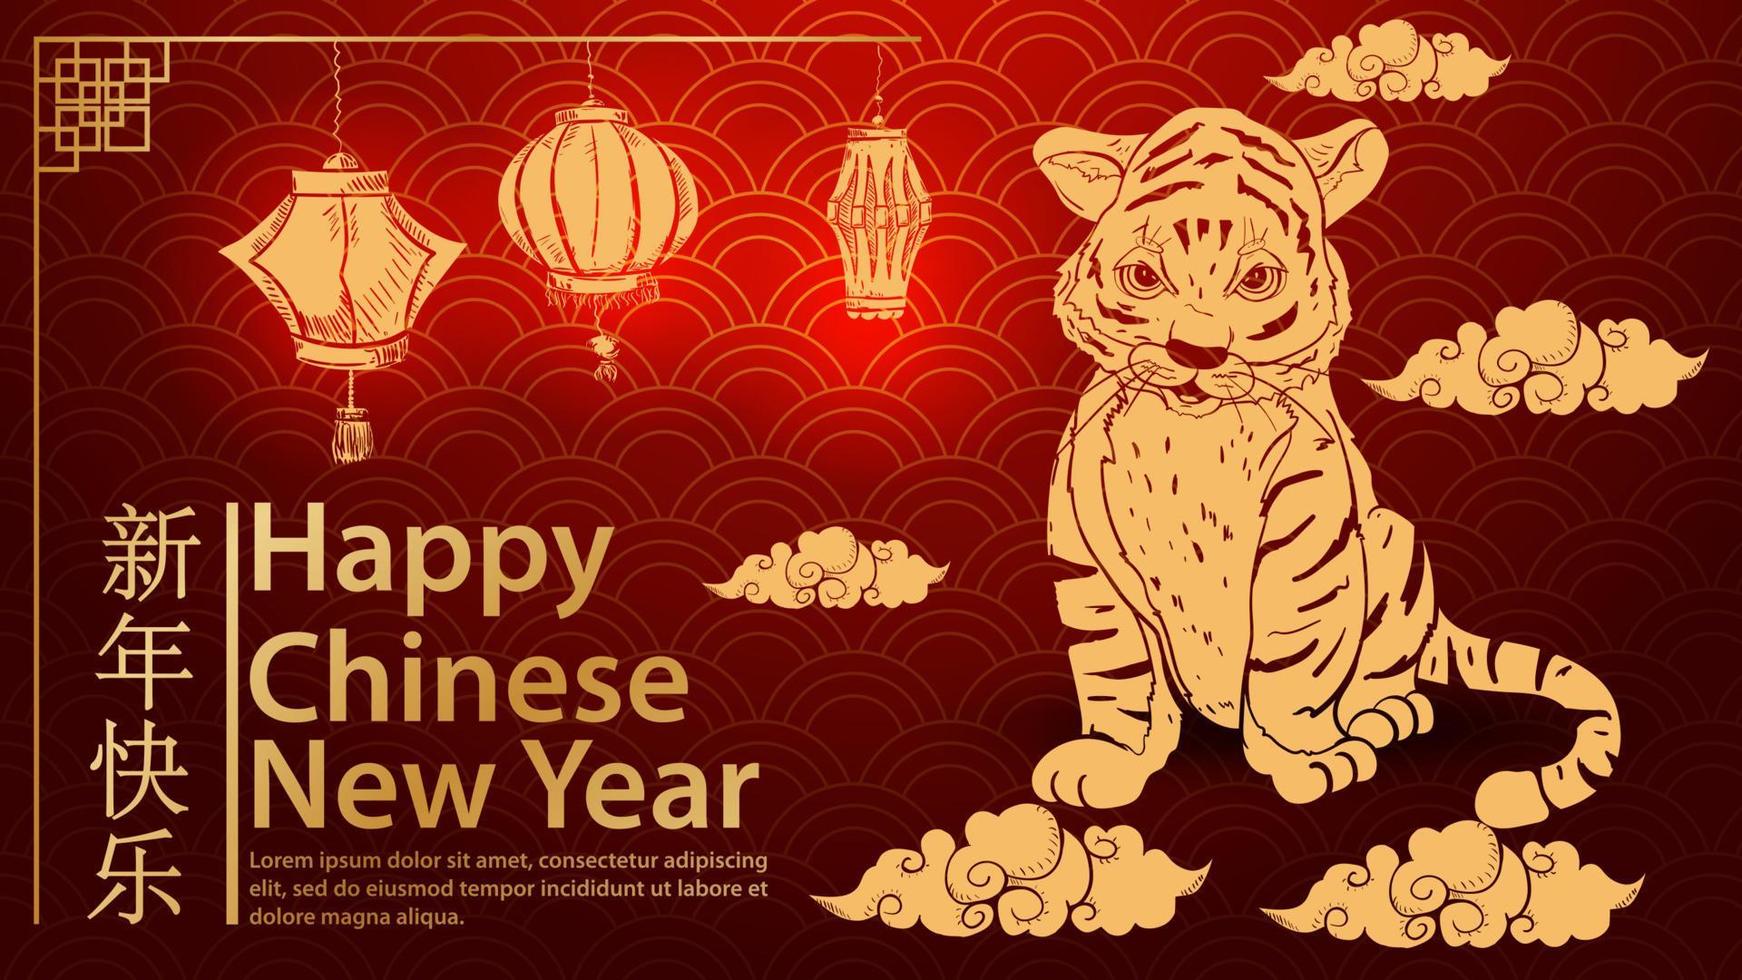 un pequeño cachorro de tigre sonríe sentado en las nubes el símbolo del año nuevo chino y la inscripción felicitaciones ola de fondo rojo vector